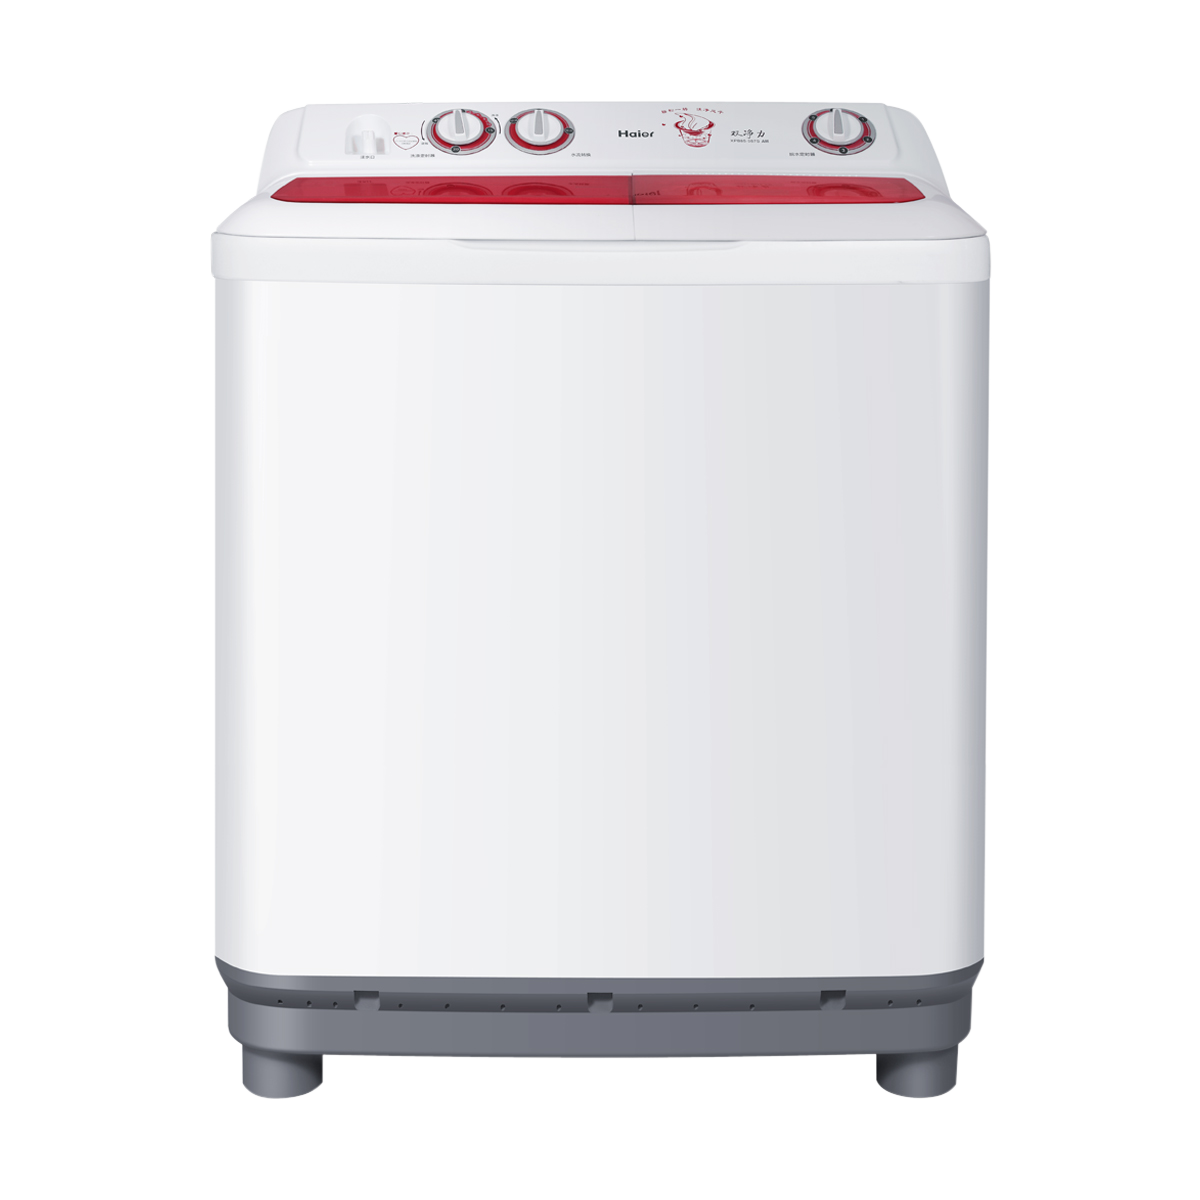 海尔Haier洗衣机 XPB85-987S(AM) 说明书